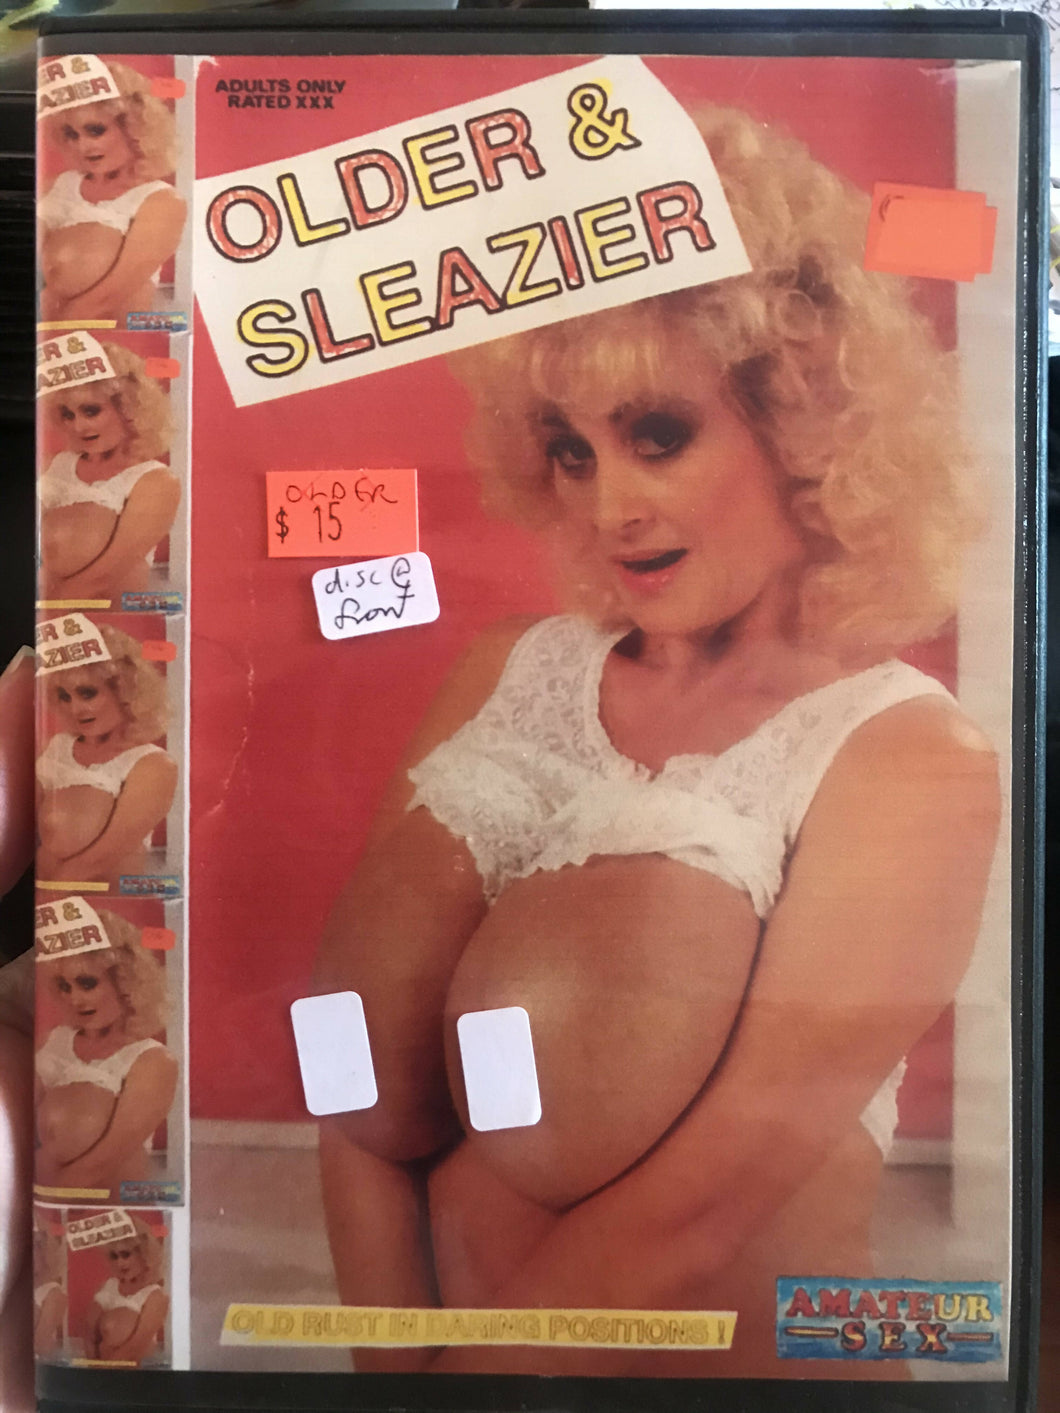 OLDER and SLEAZIER DVDR bootleg milf sov mature